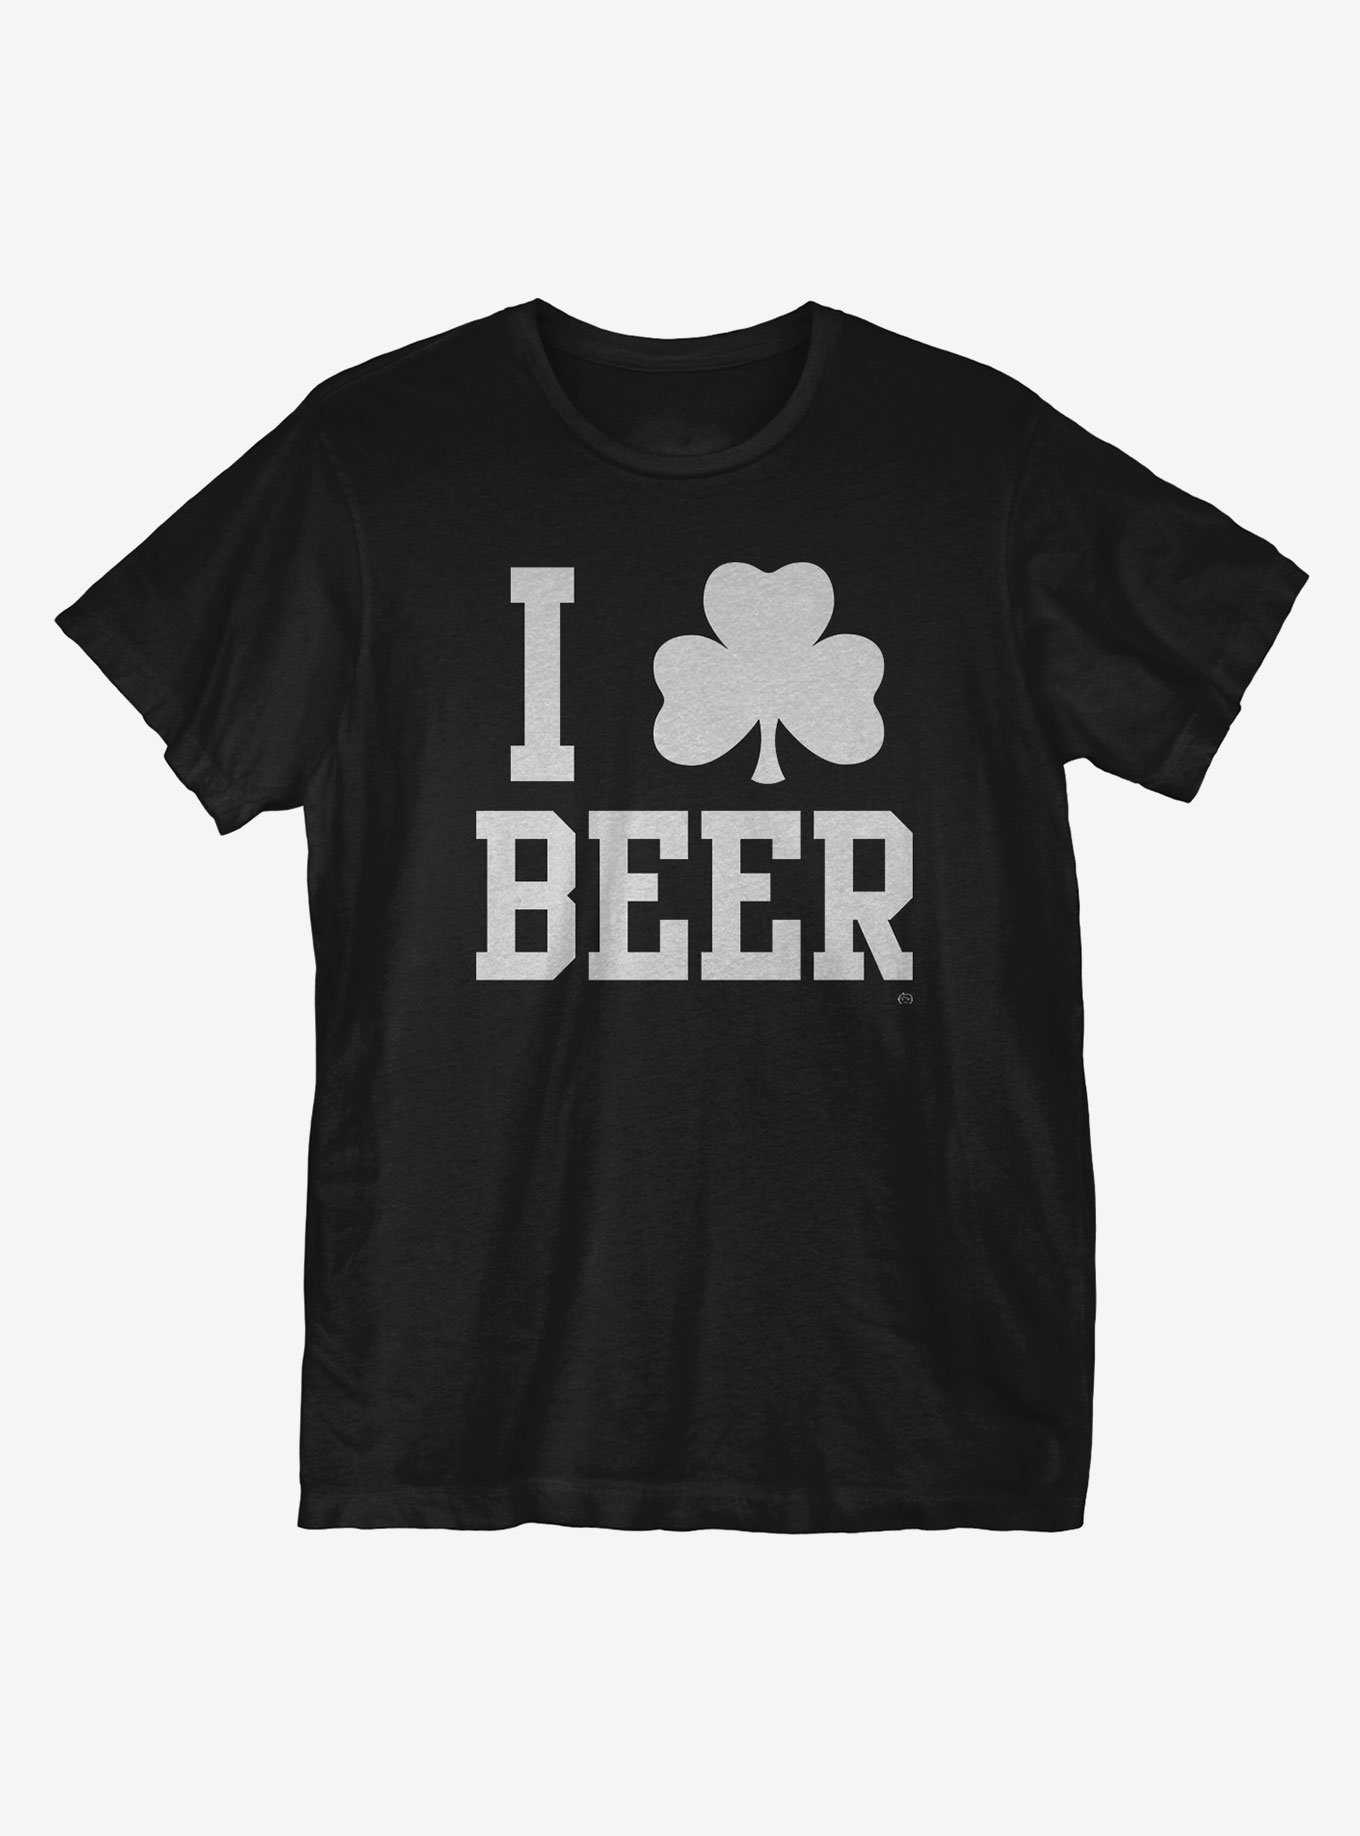 I Clover Beer T-Shirt, , hi-res